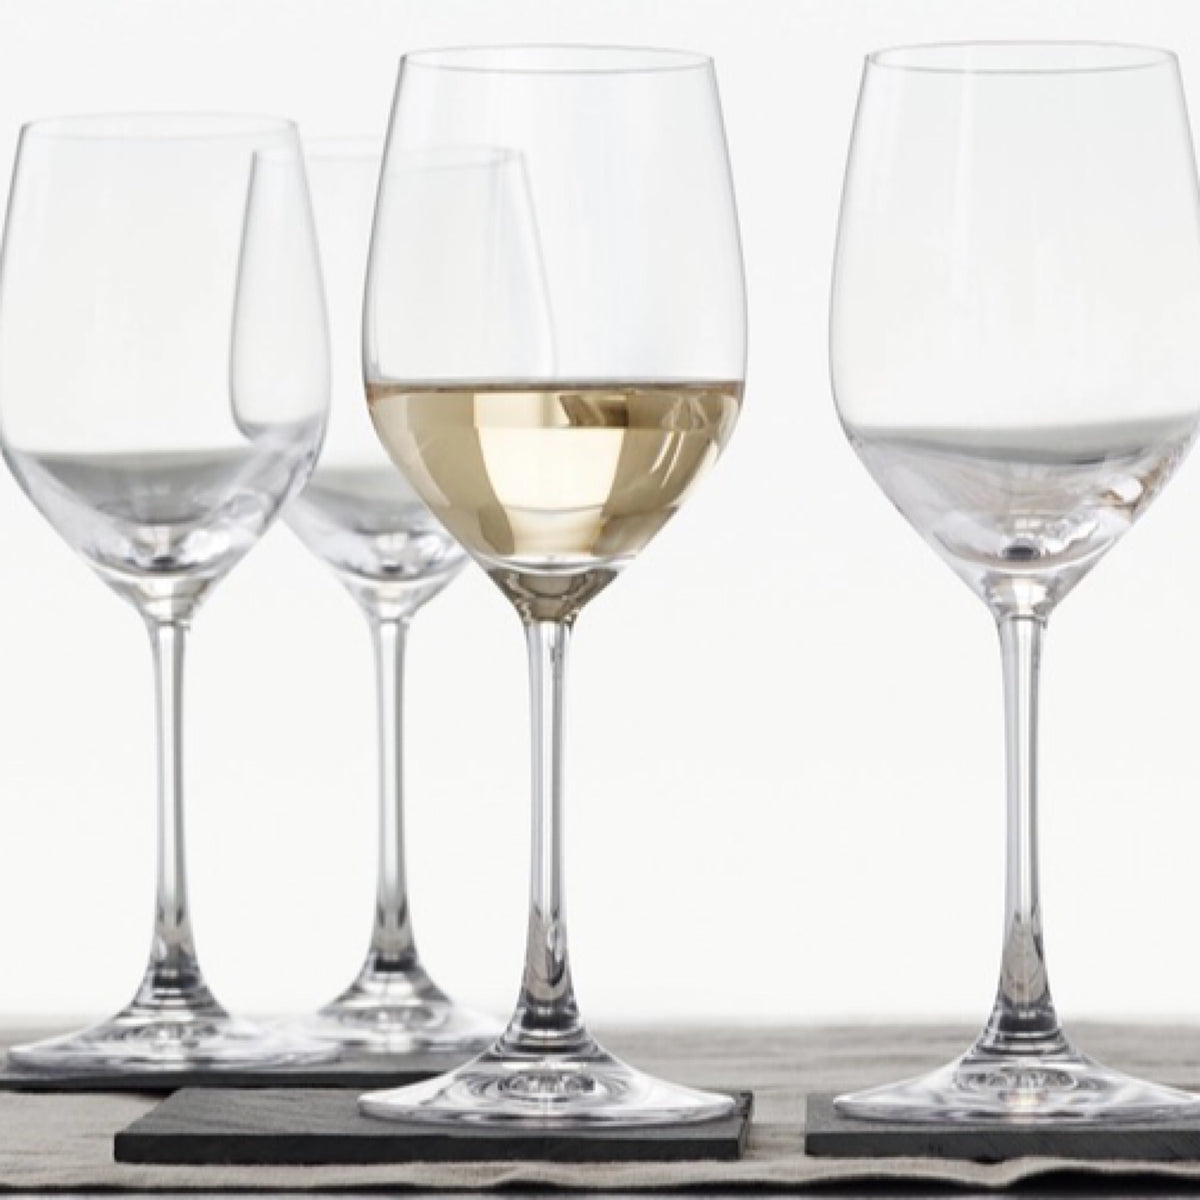 Vino Grande White Wine Glasses, Set of 4